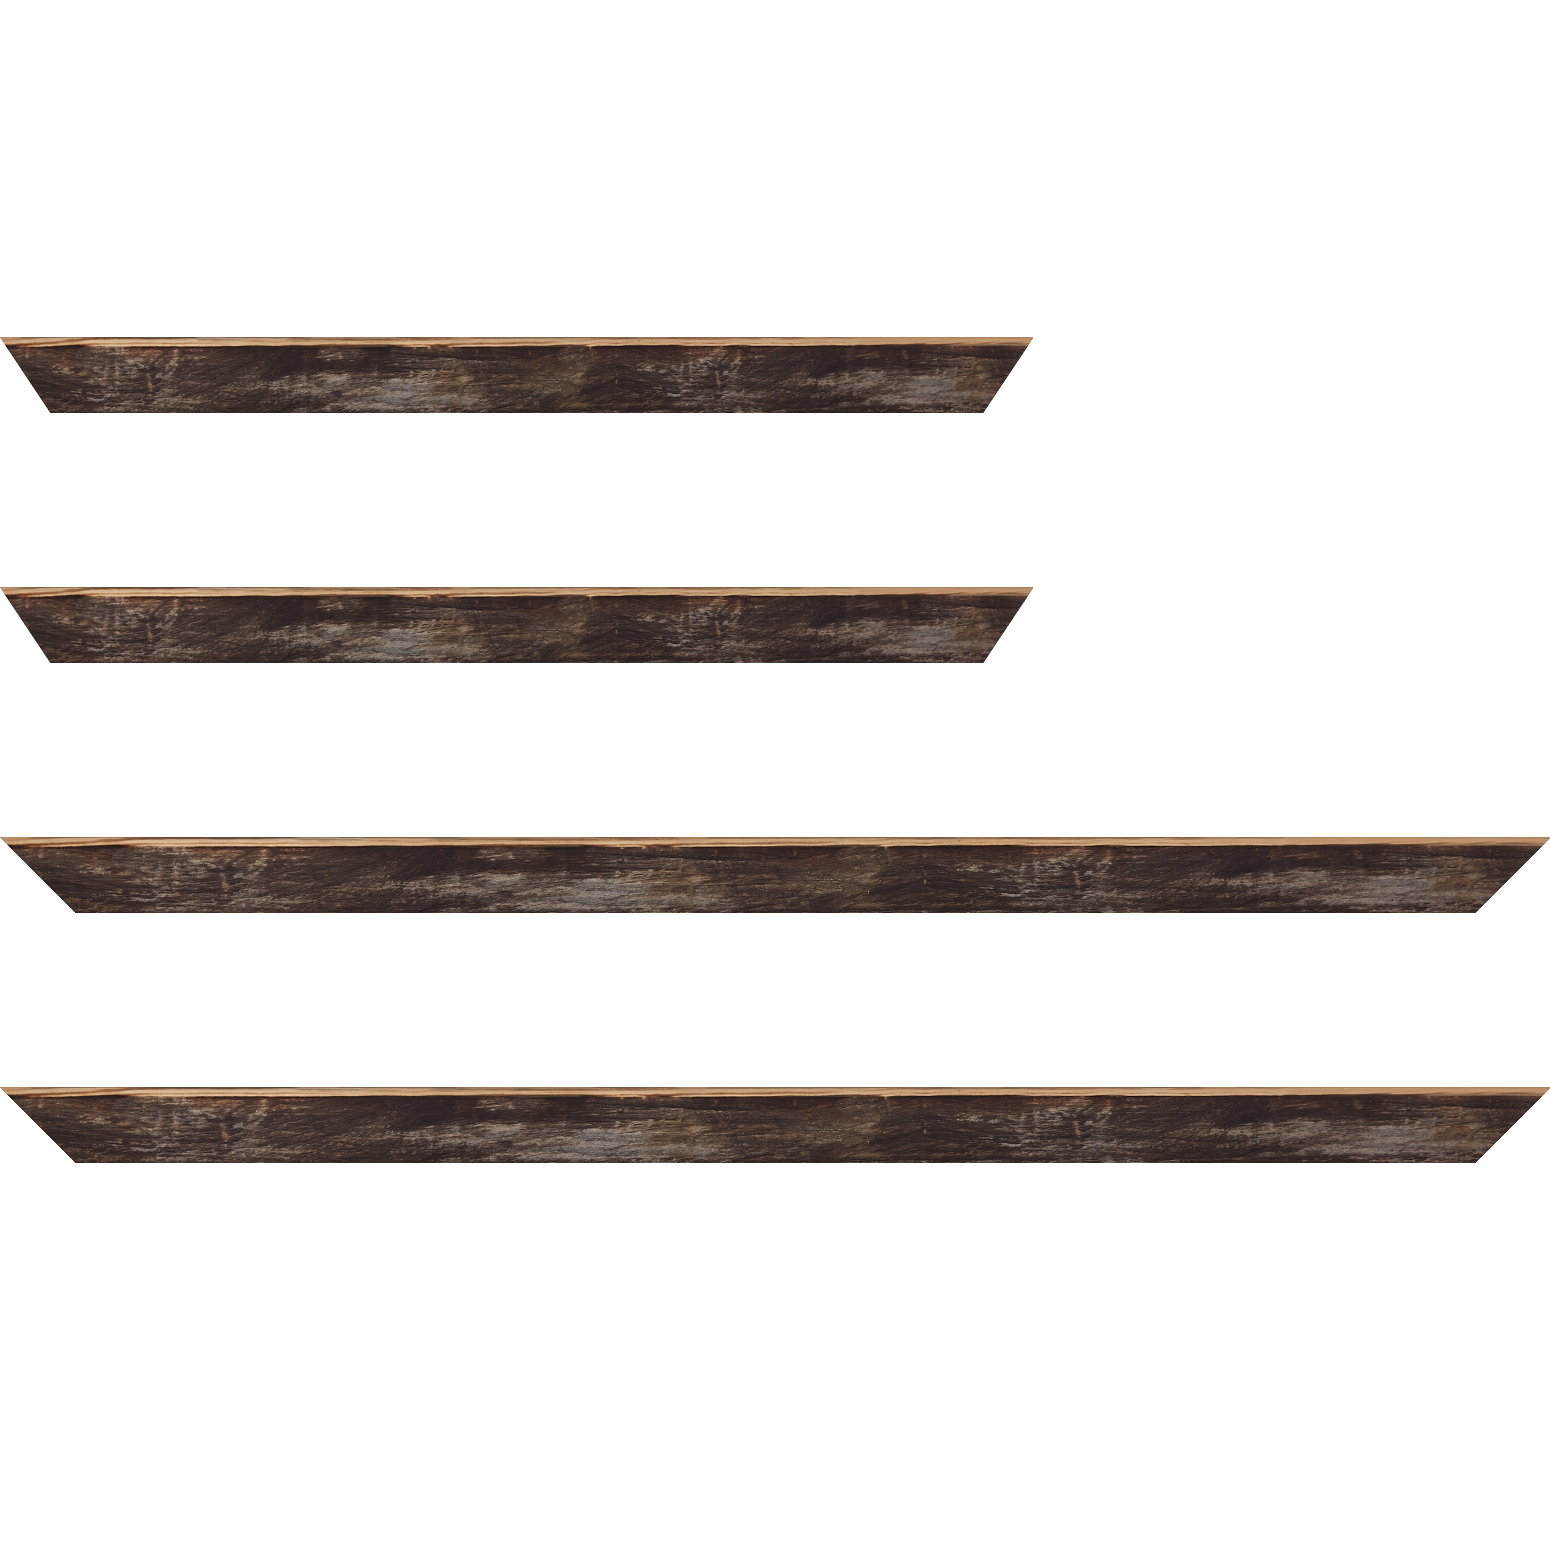 Baguette bois profil arrondi en pente plongeant largeur 2.4cm couleur noir ébène effet ressuyé, angle du cadre extérieur filet naturel - 50x60